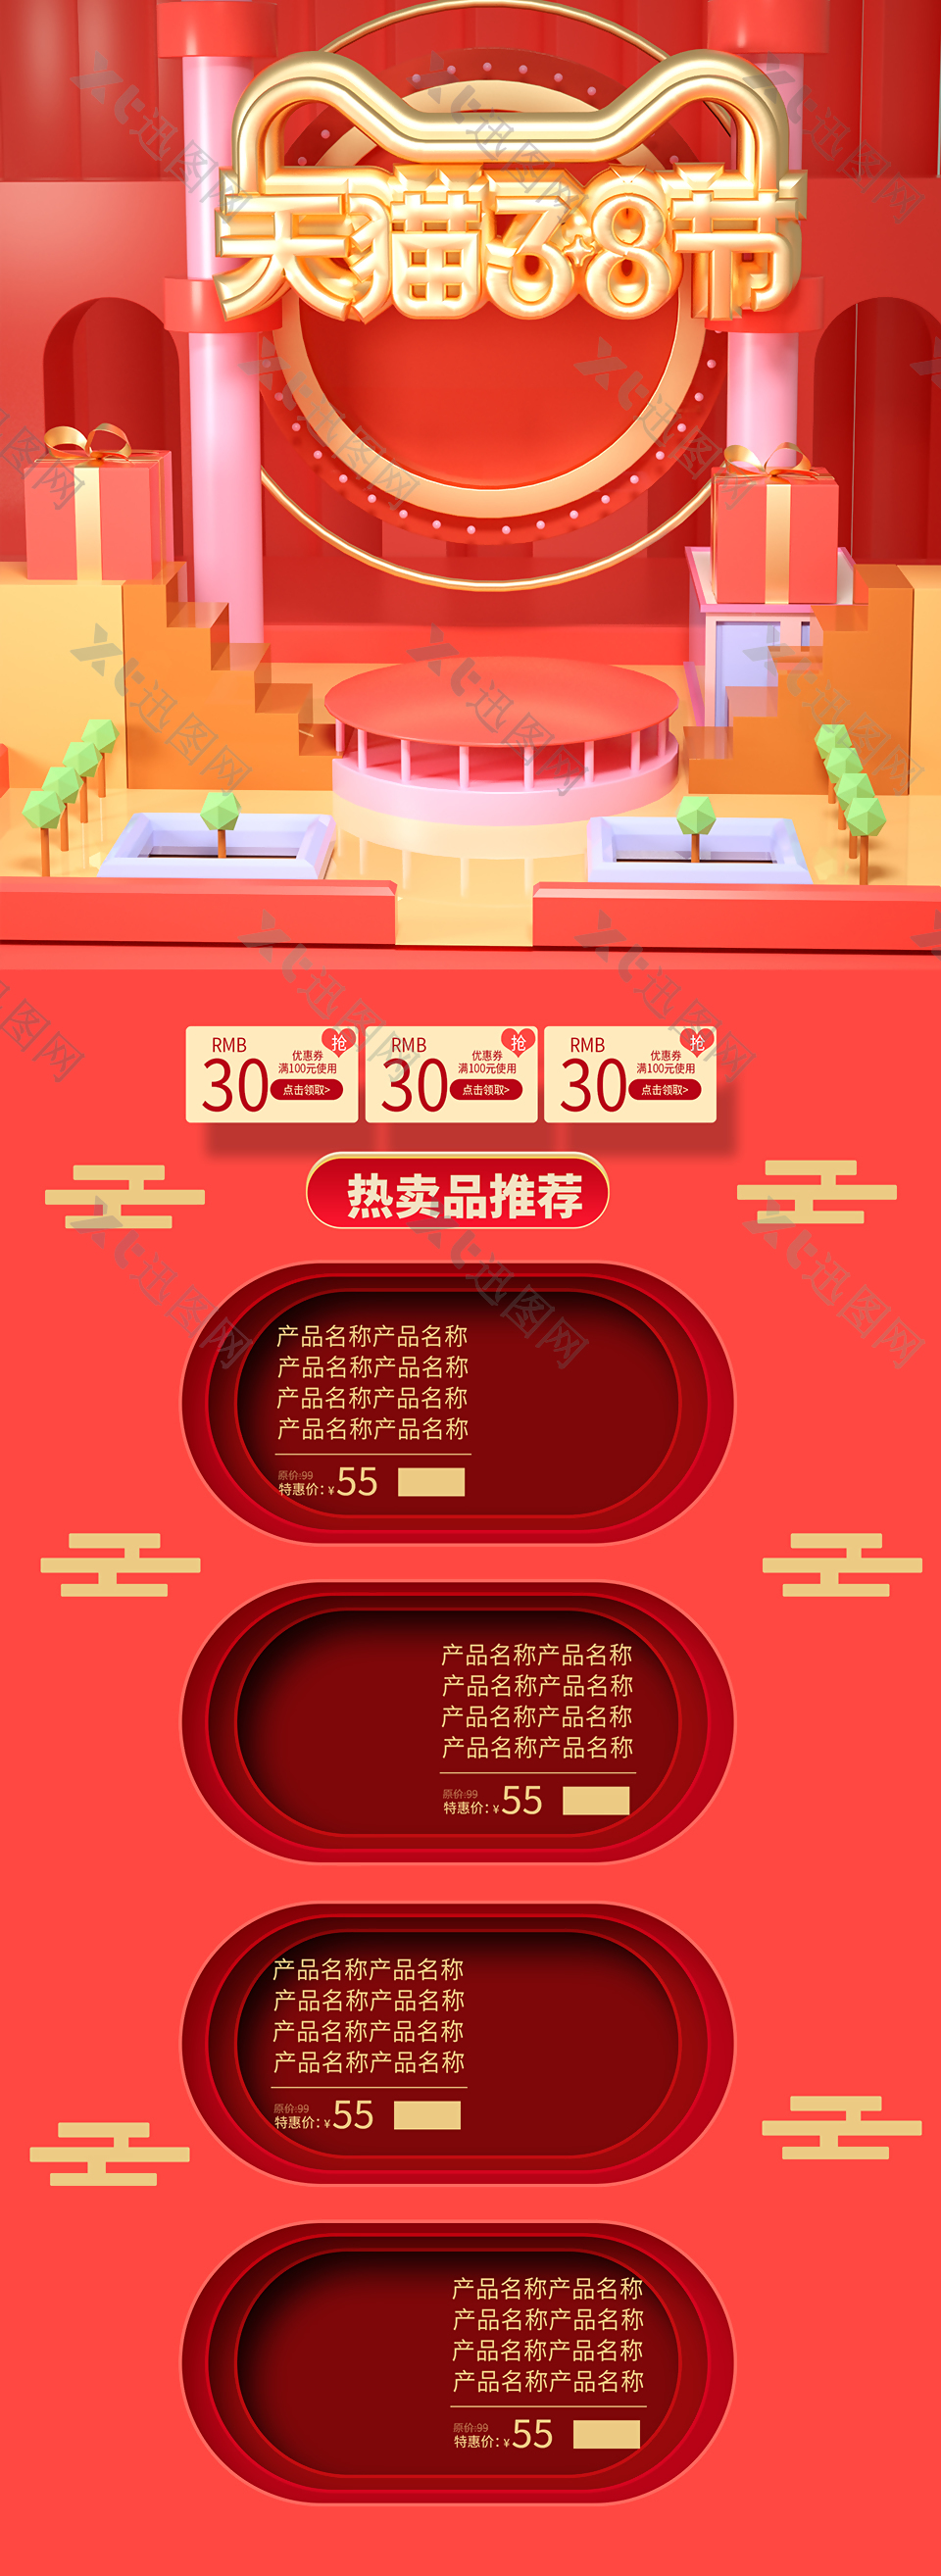 天猫3.8节妇女节店铺首页模板下载